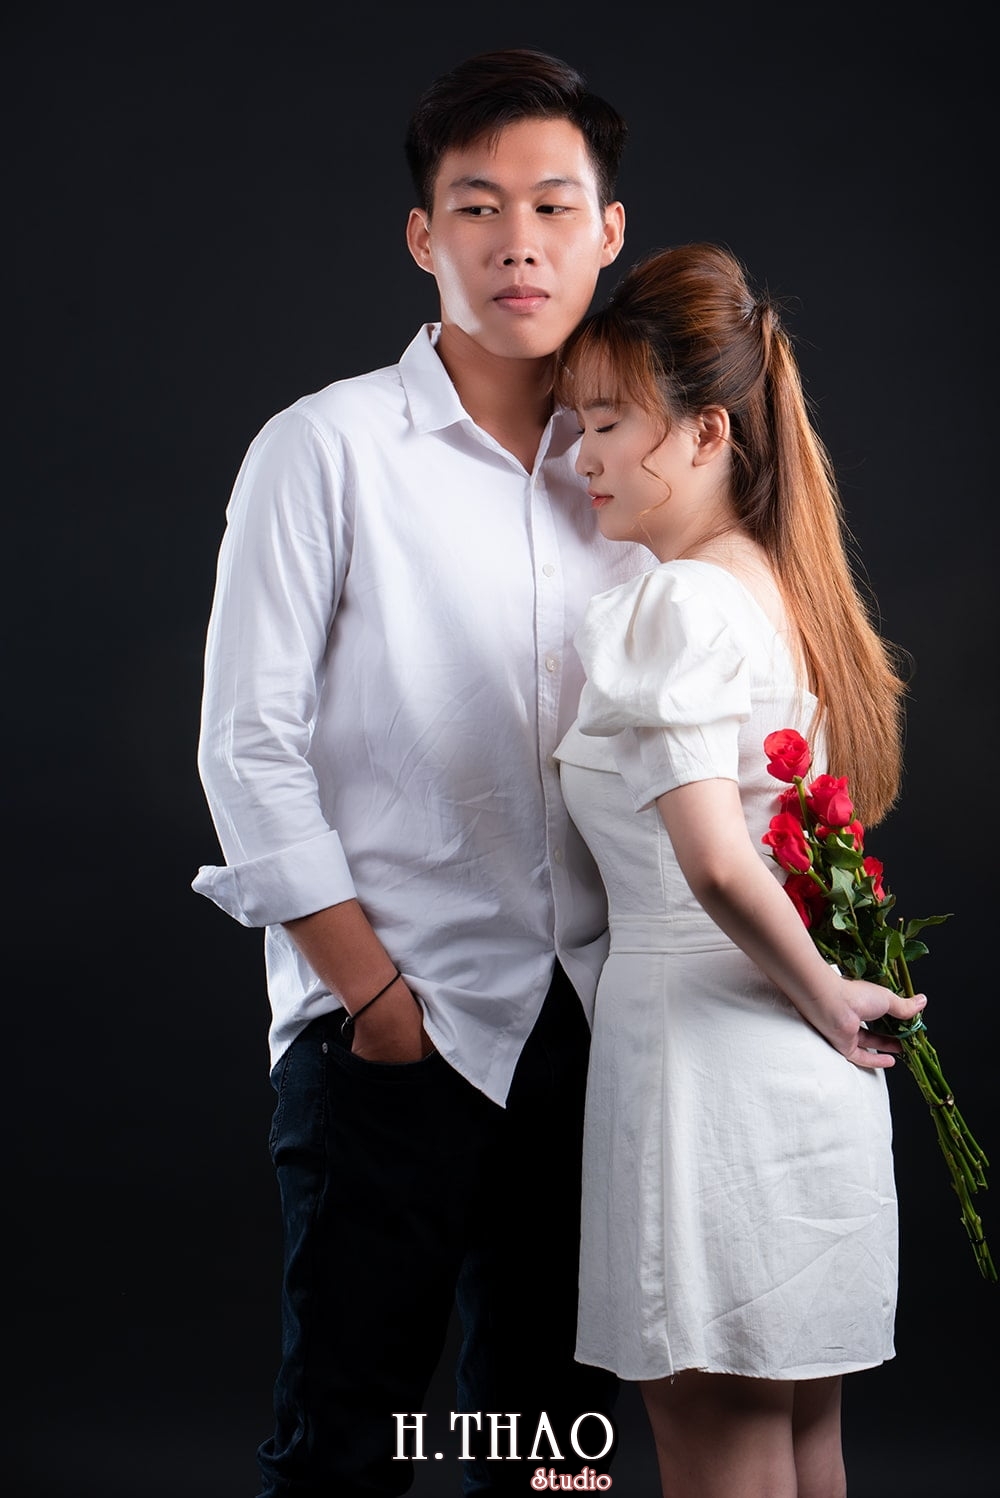 Anh couple 19 - Album ảnh couple siêu nhí nhảnh chụp trong studio - HThao Studio